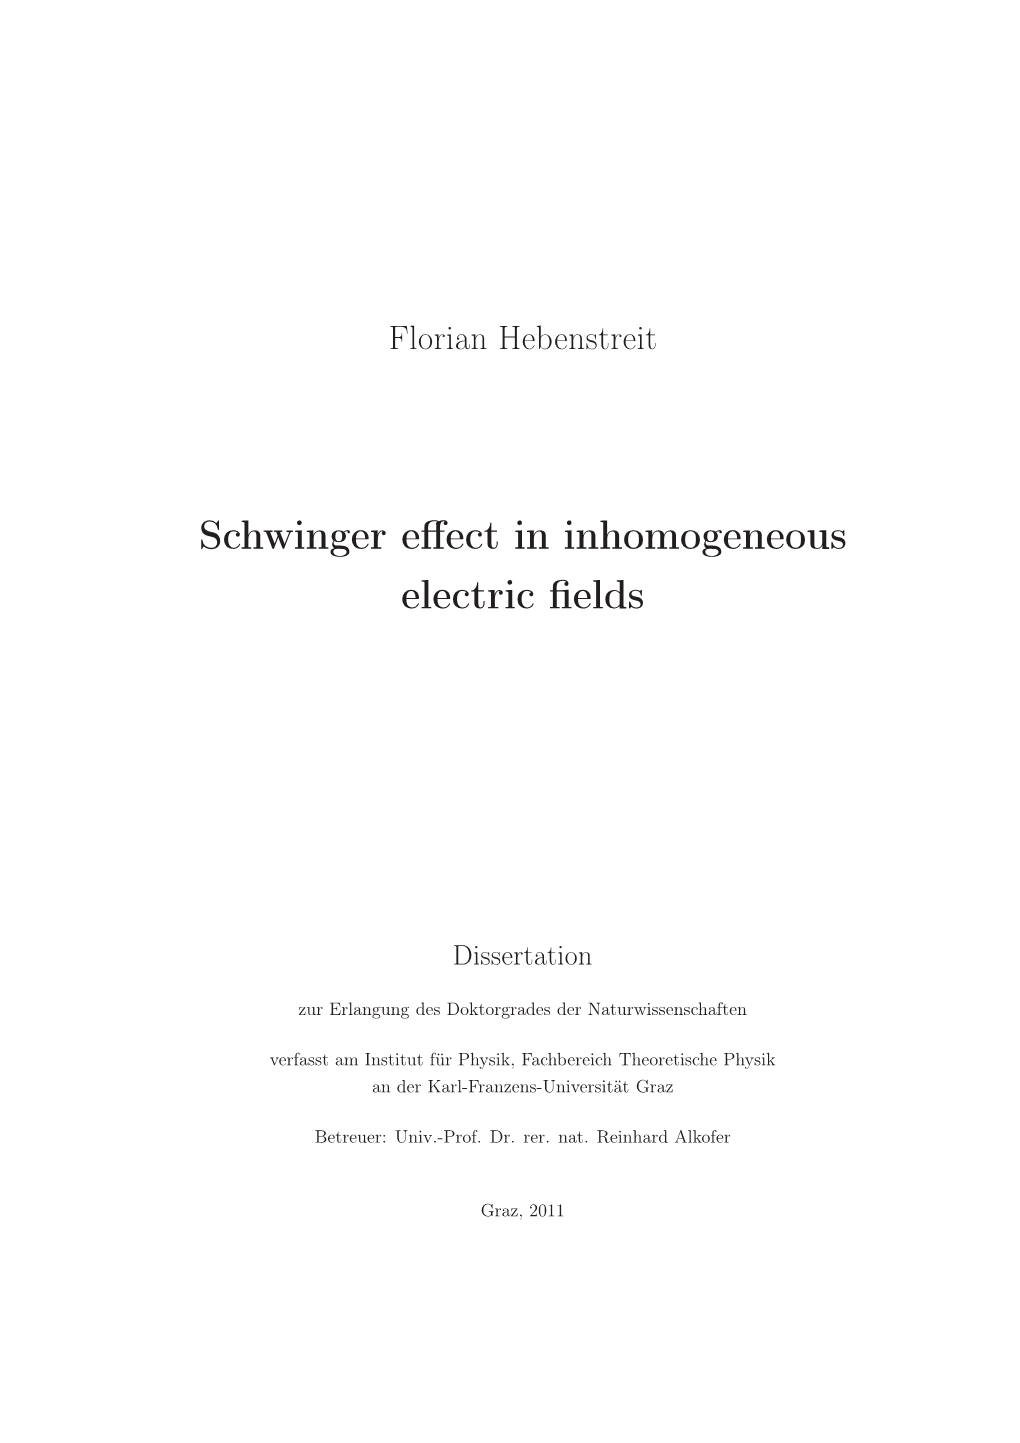 Schwinger Effect in Inhomogeneous Electric Fields